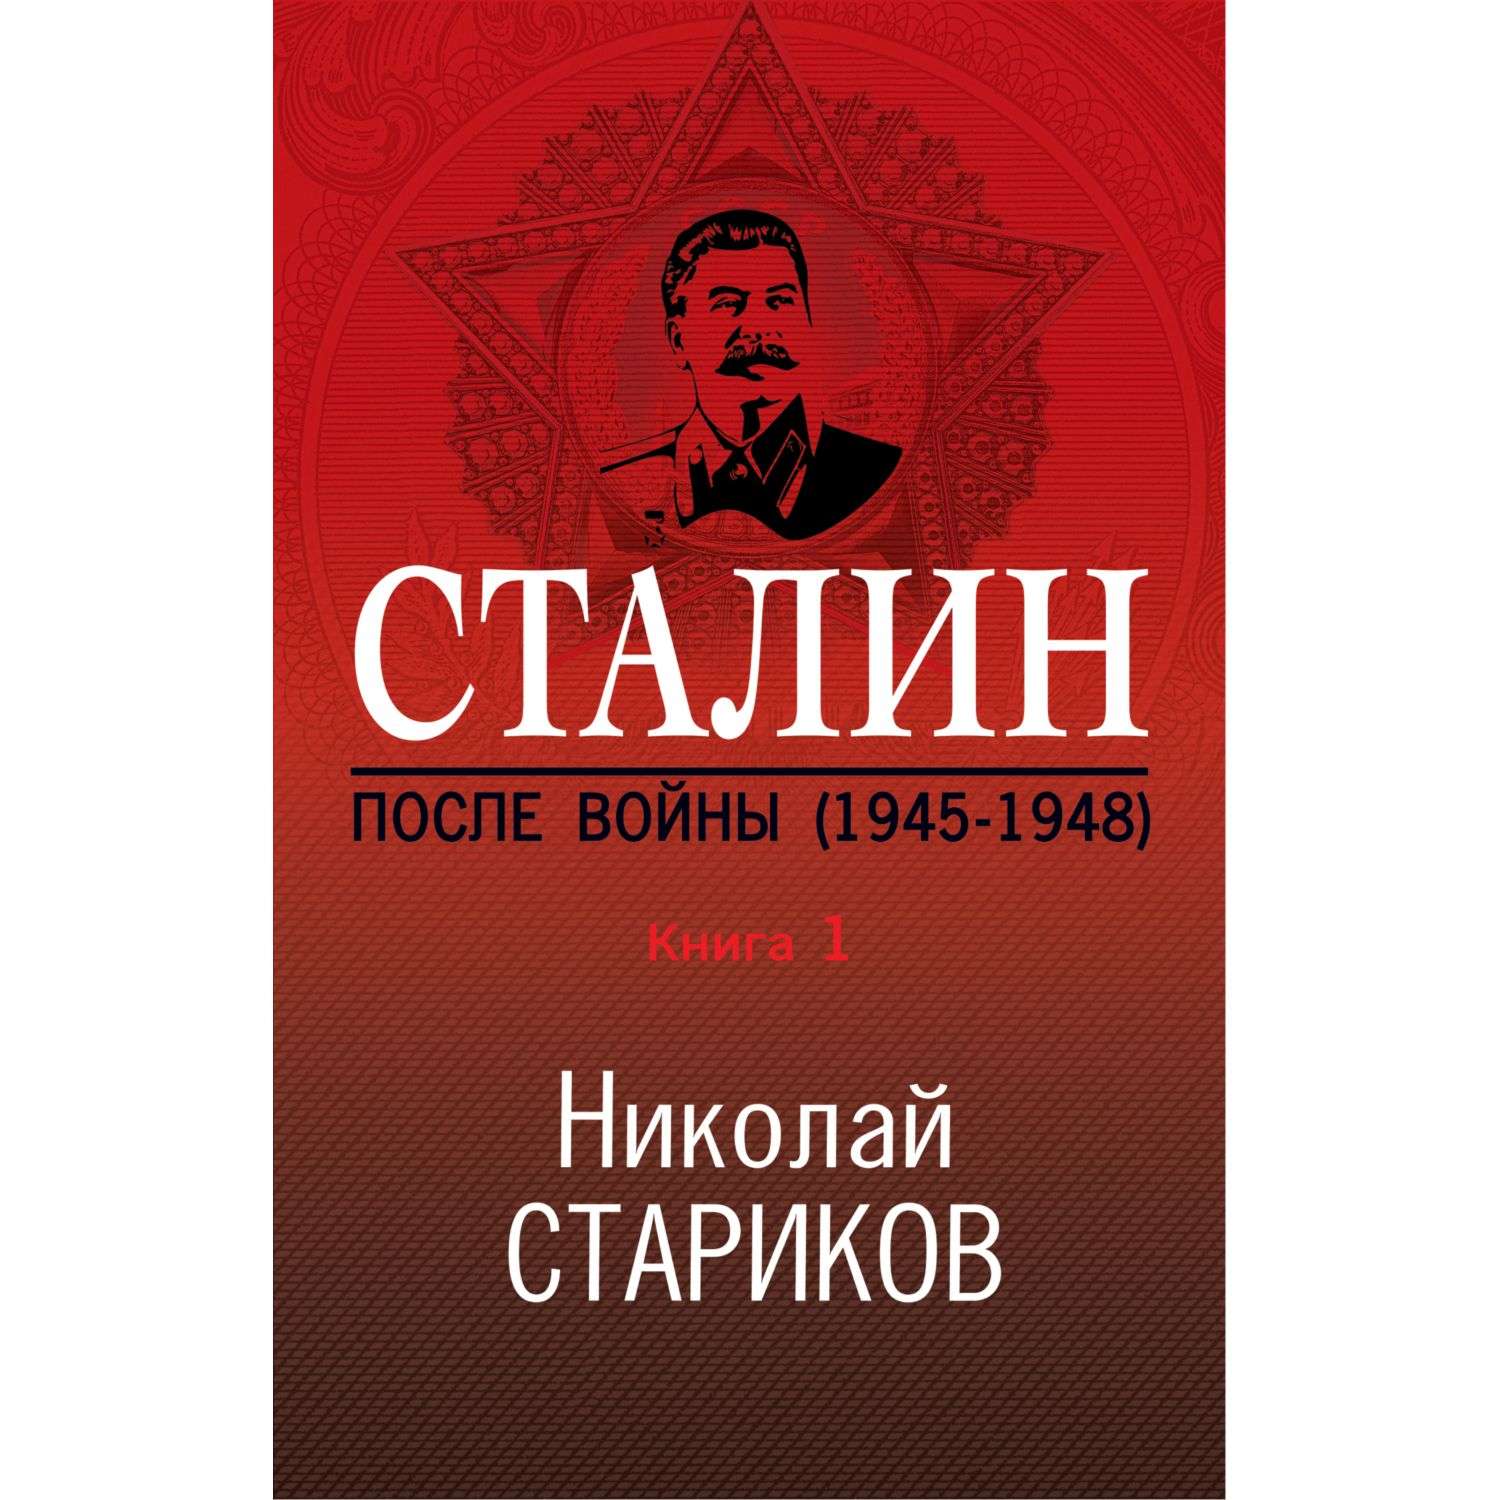 Книга Эксмо Сталин После войны Часть первая 1945-1948 - фото 4